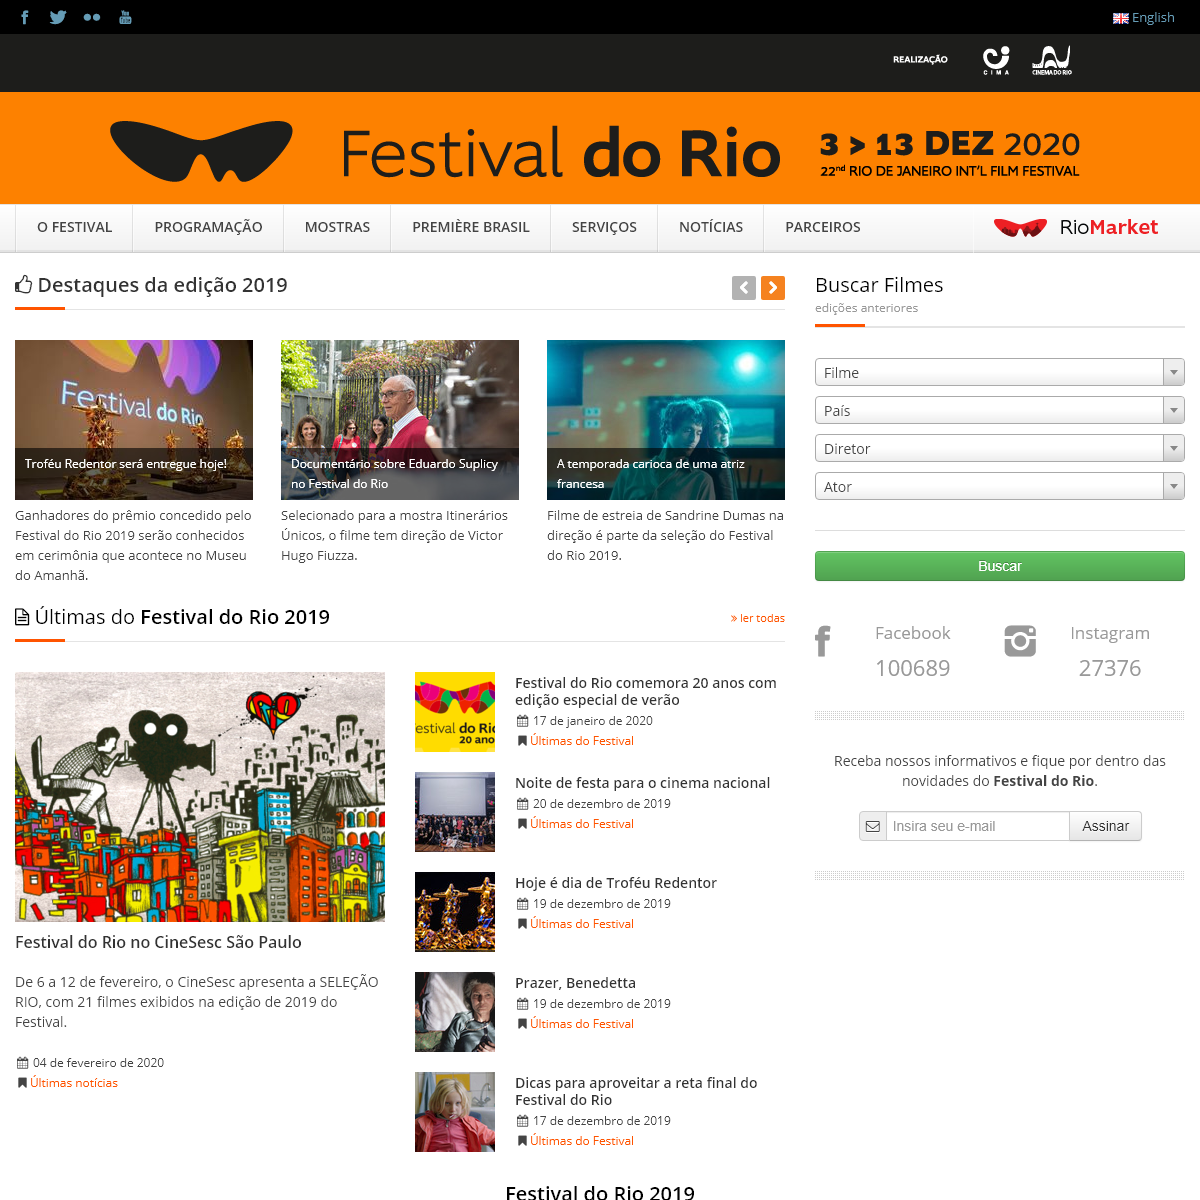 A complete backup of festivaldorio.com.br